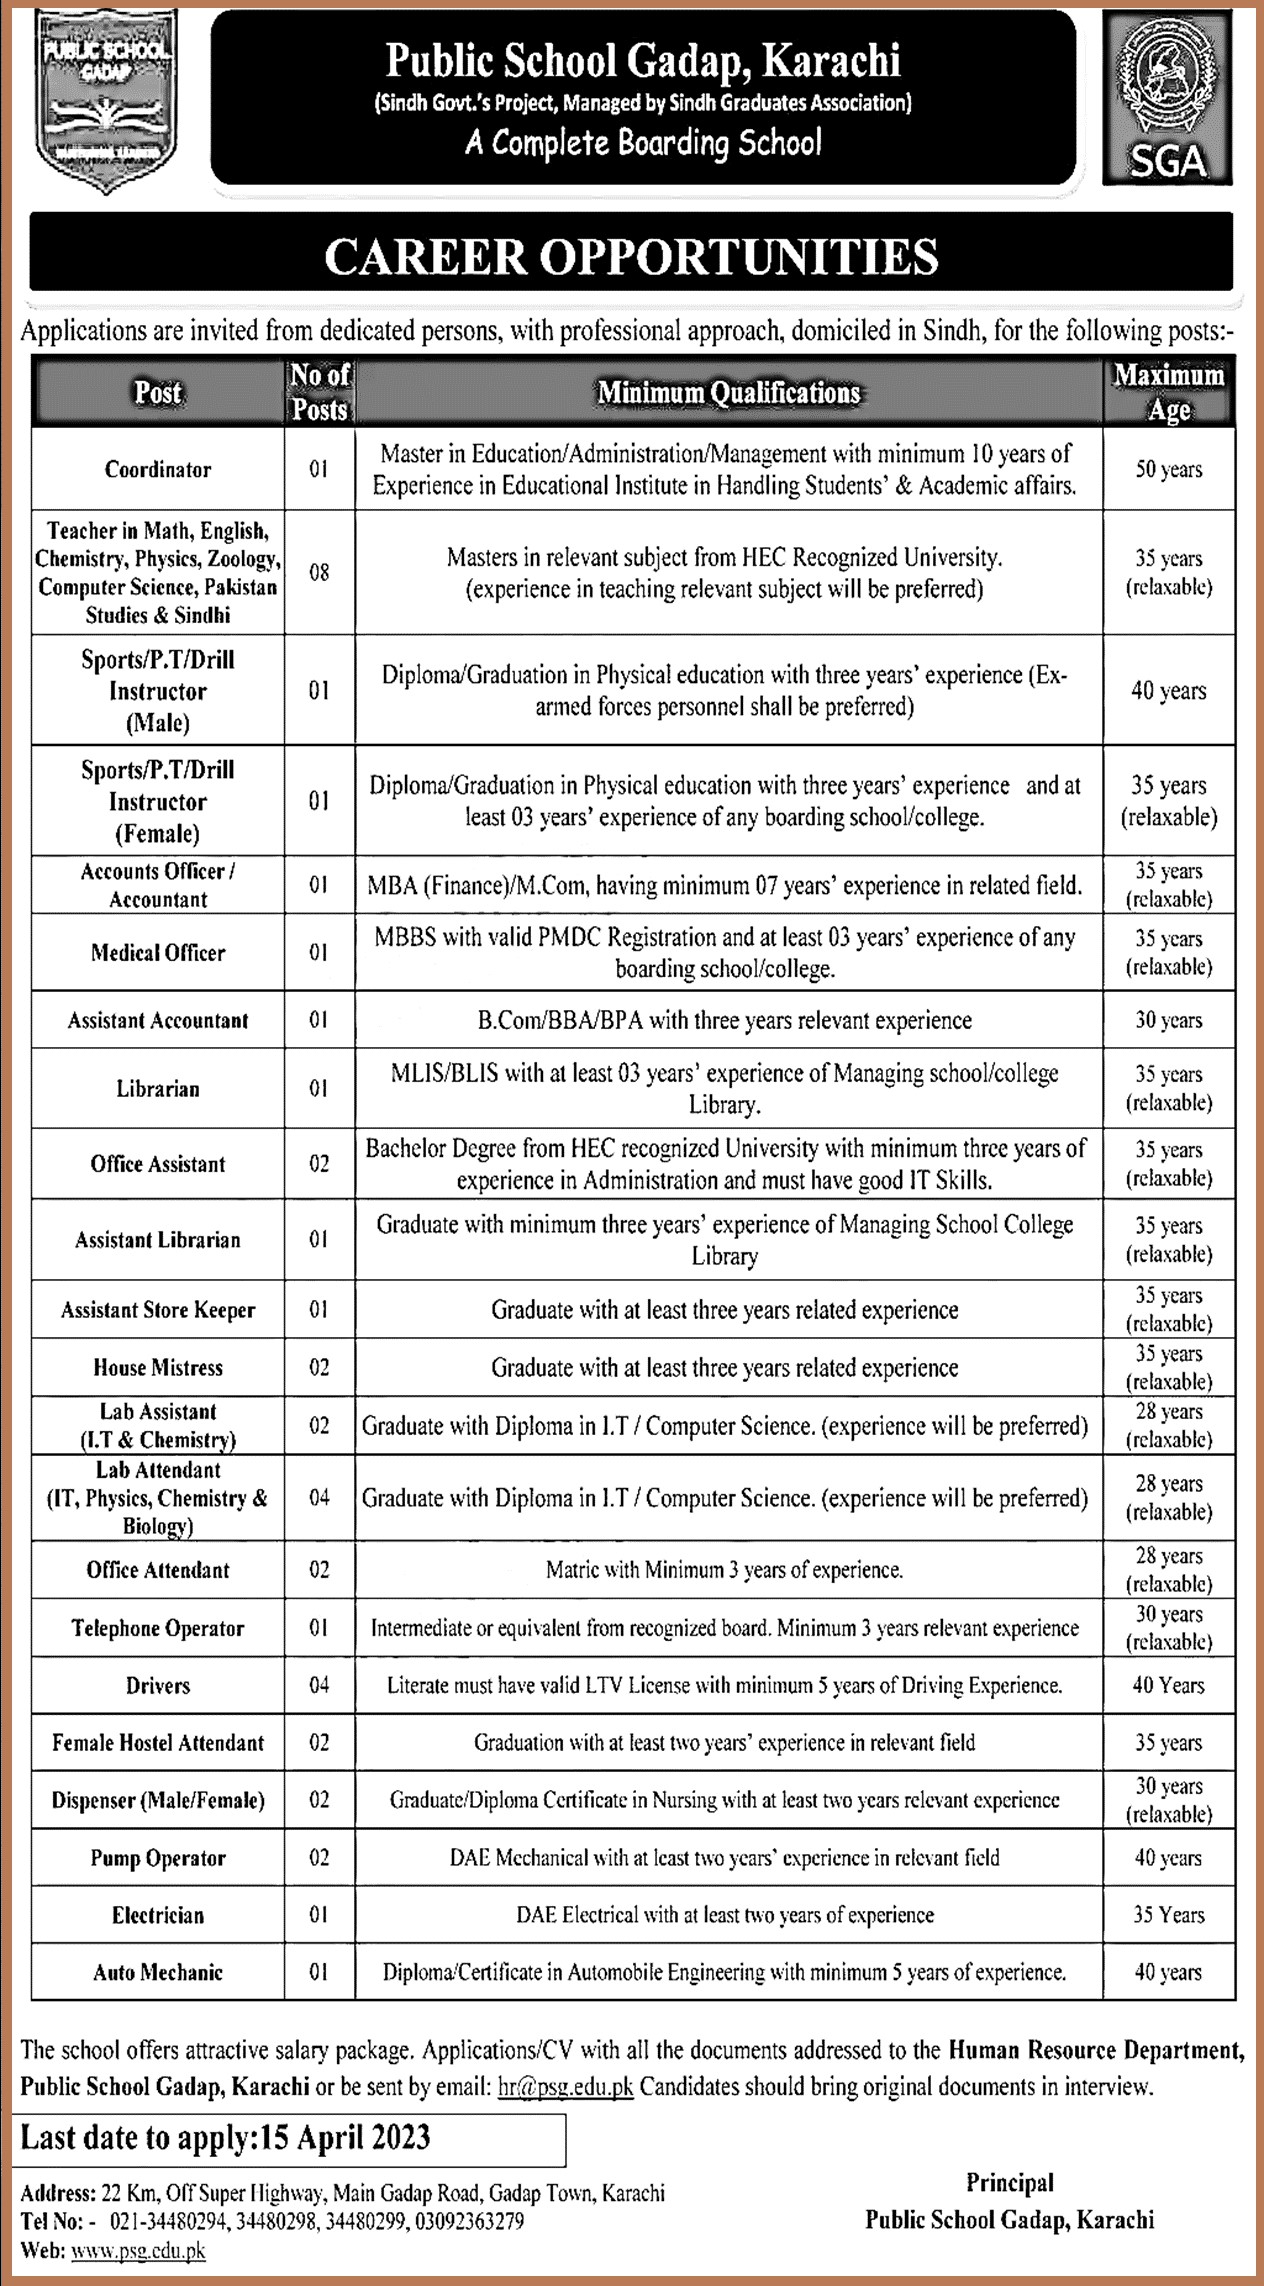 Public School Gadap (PSG) Karachi Jobs 2023